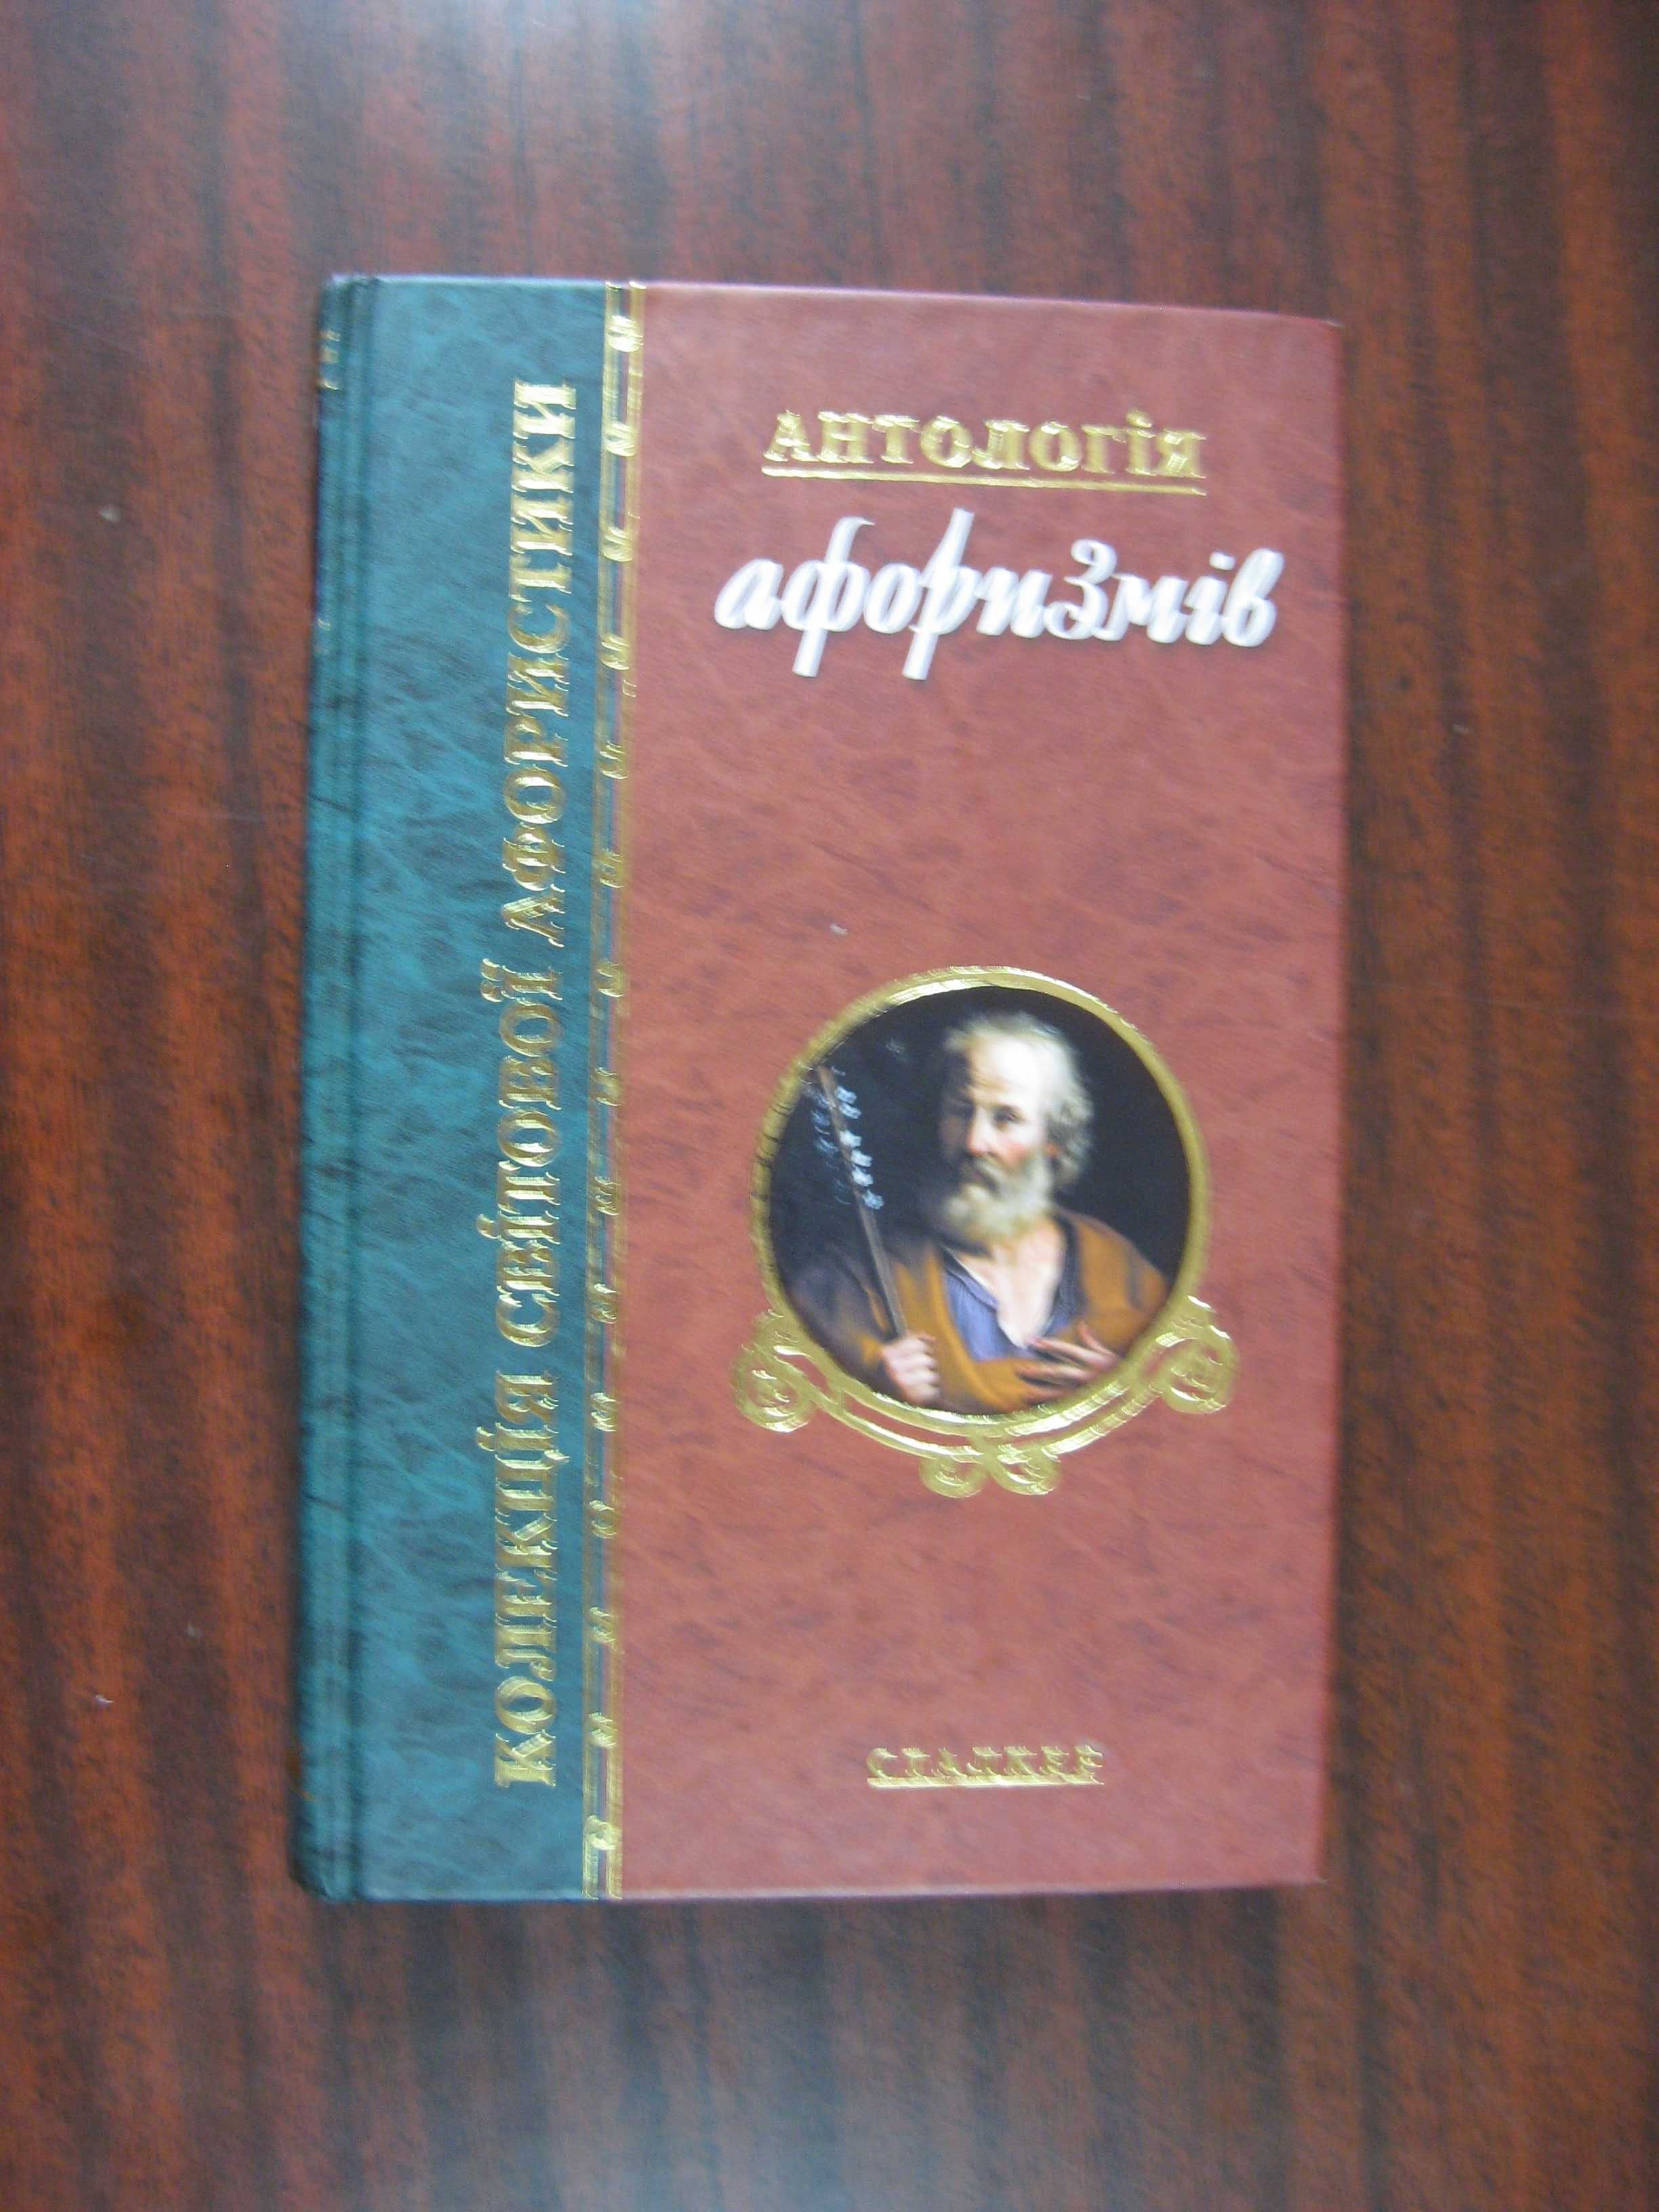 Антологія афоризмів. Колекція світової афористики.